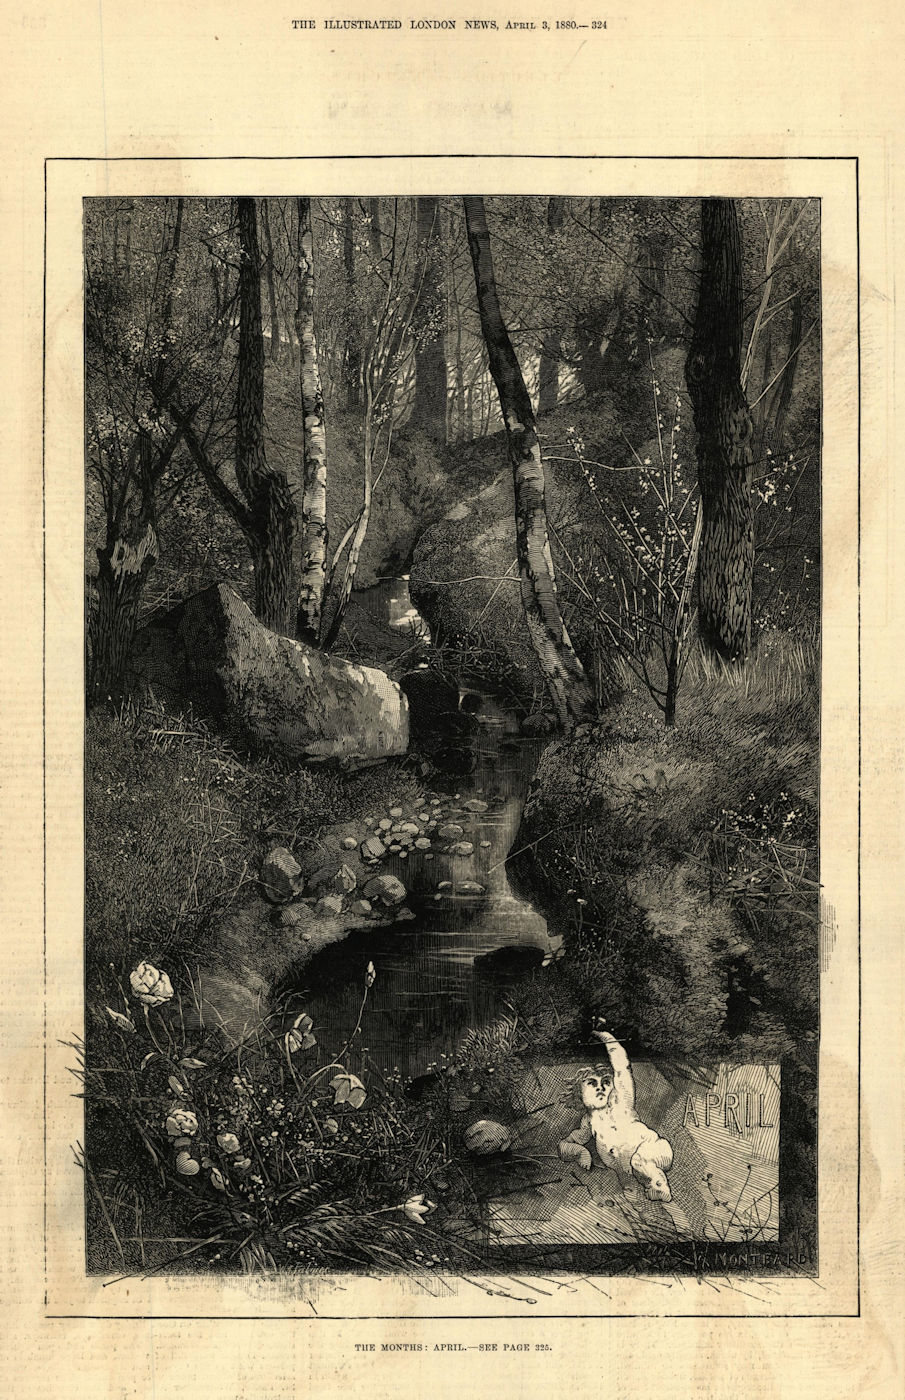 Associate Product The month: April. Landscapes. Fine arts 1880 old antique vintage print picture